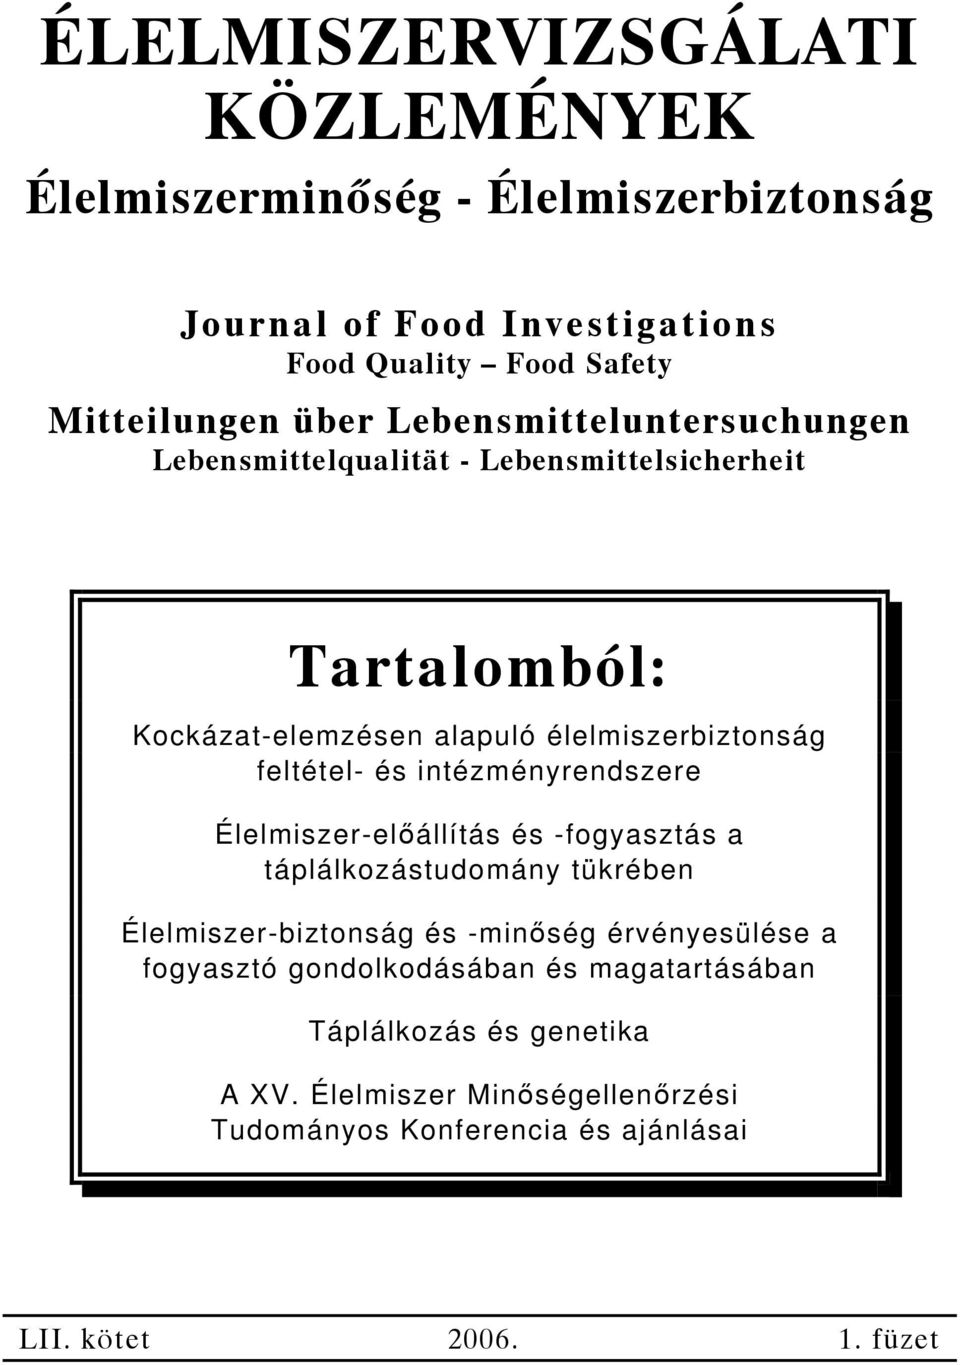 intézményrendszere Élelmiszer-előállítás és -fogyasztás a táplálkozástudomány tükrében Élelmiszer-biztonság és -minőség érvényesülése a fogyasztó